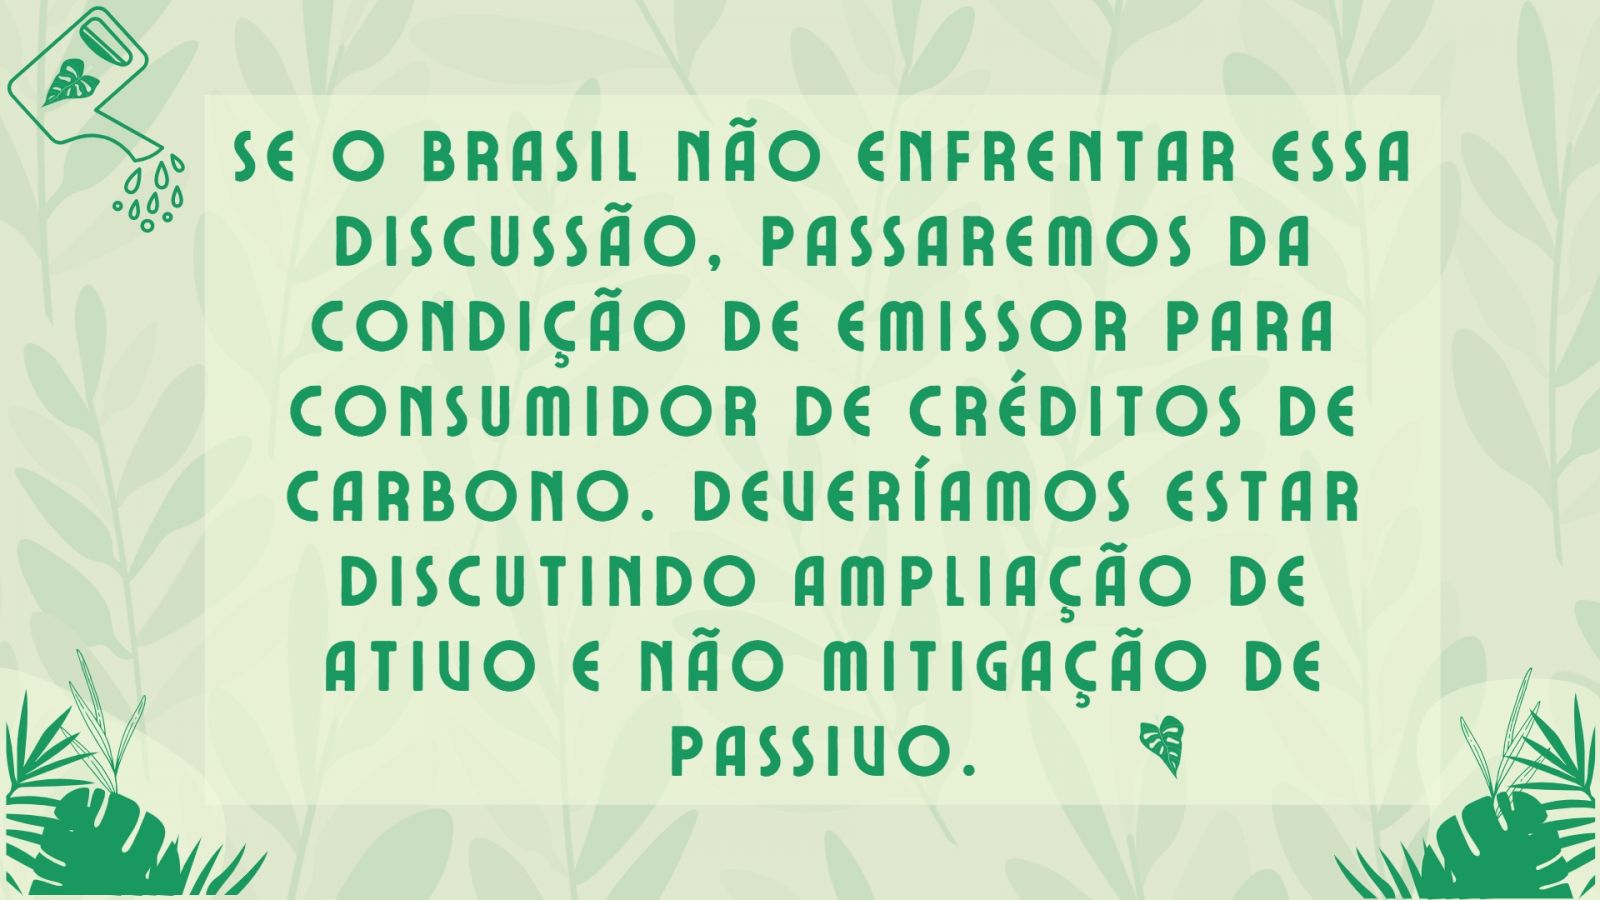 Créditos de carbono: considerações sobre a missão brasileira na China - News Rondônia